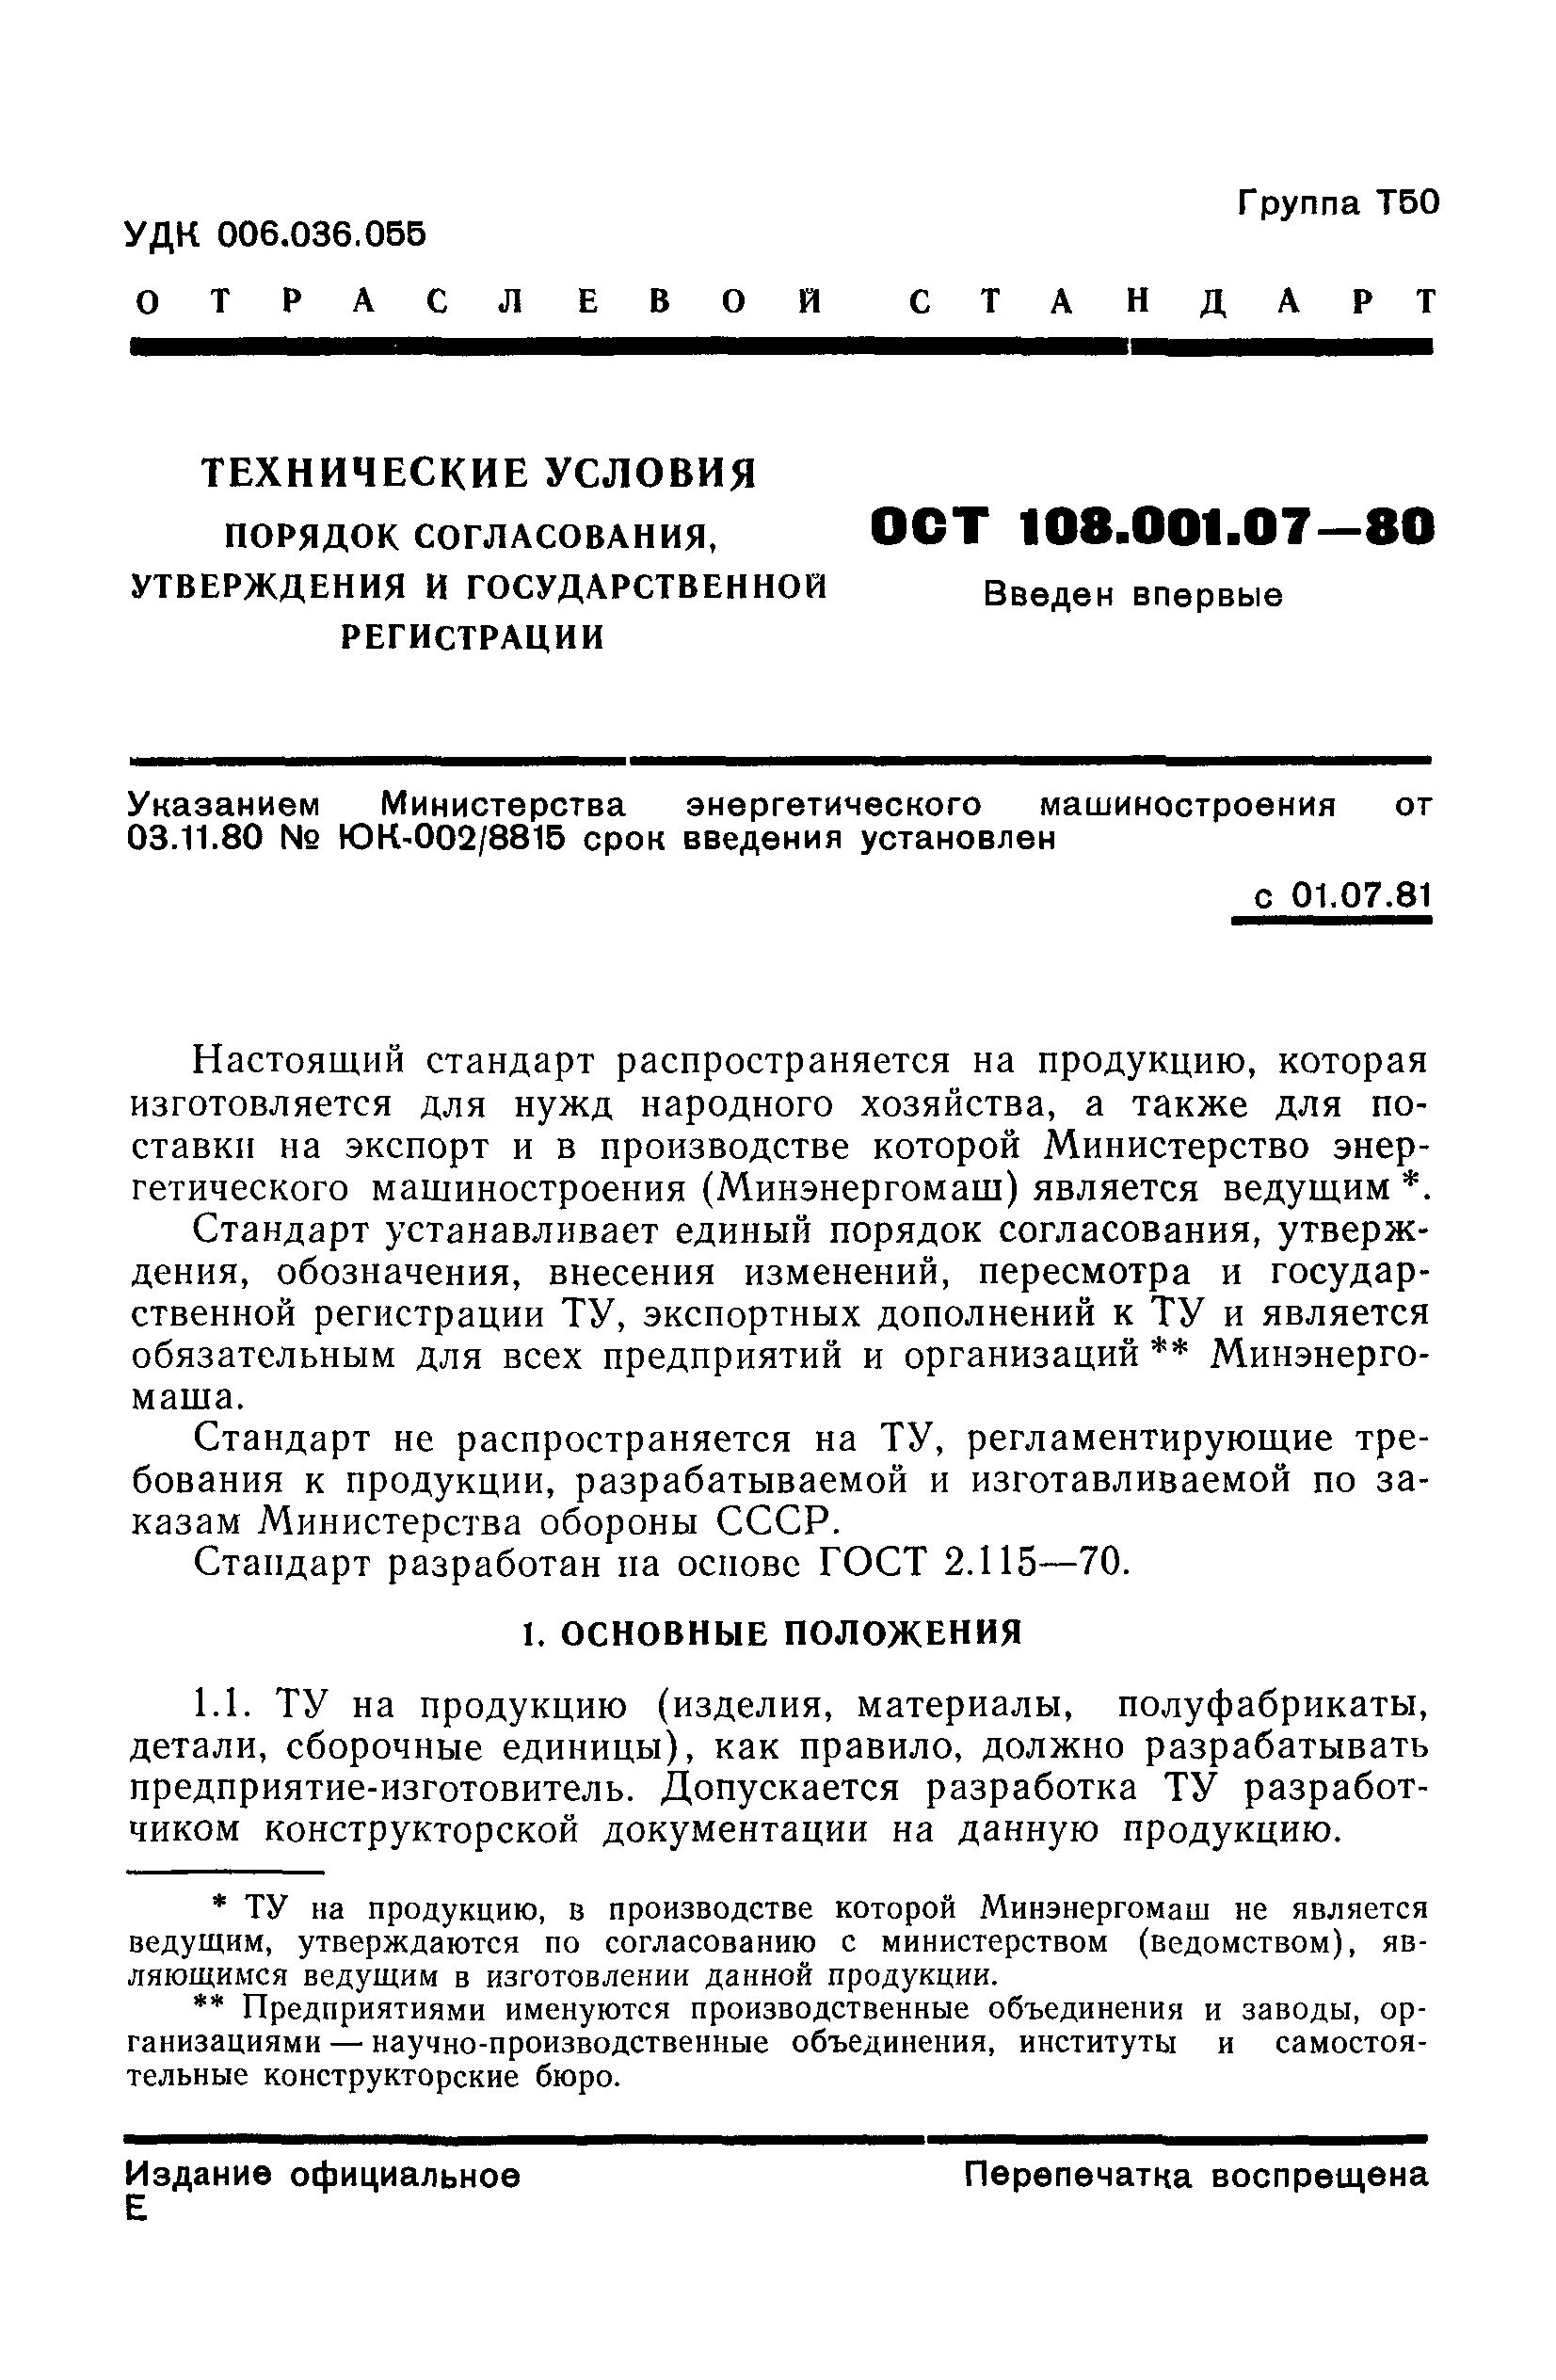 ОСТ 108.001.07-80